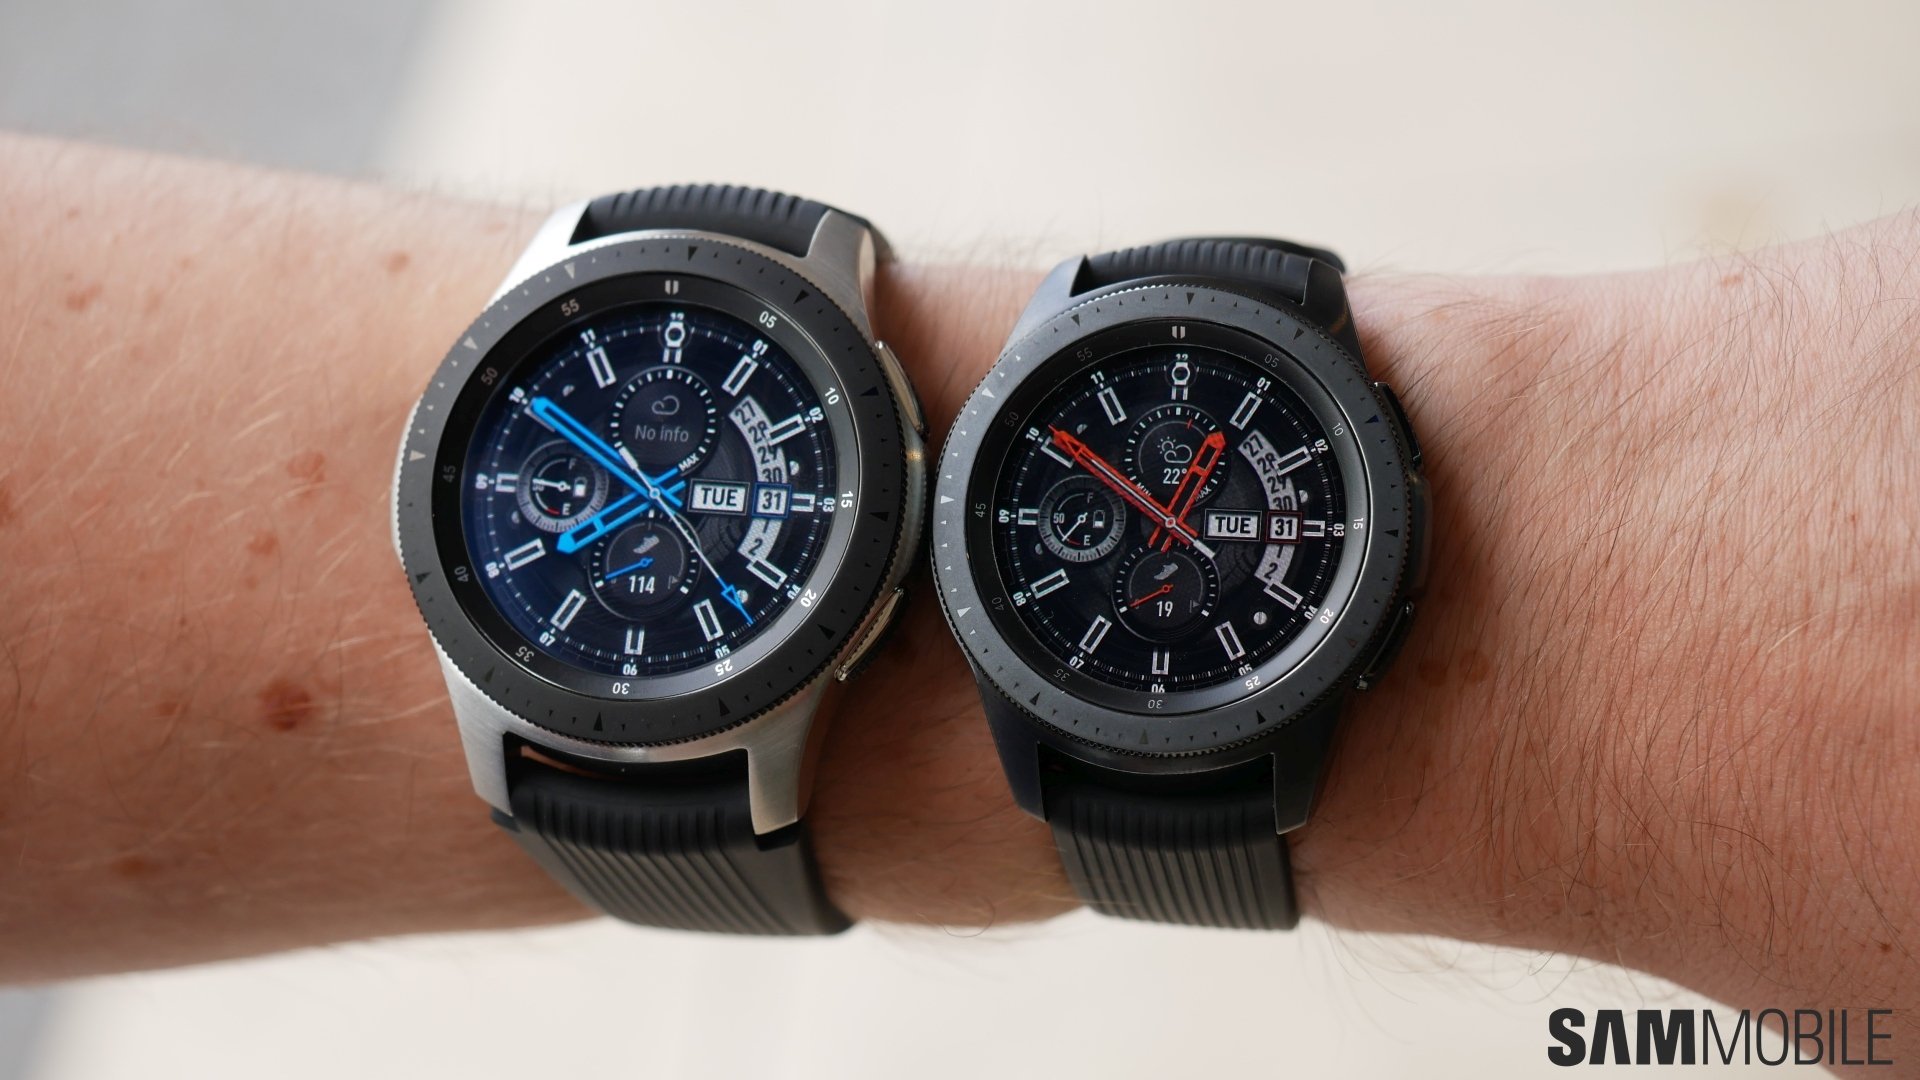 Samsung Galaxy Watch hands-on 